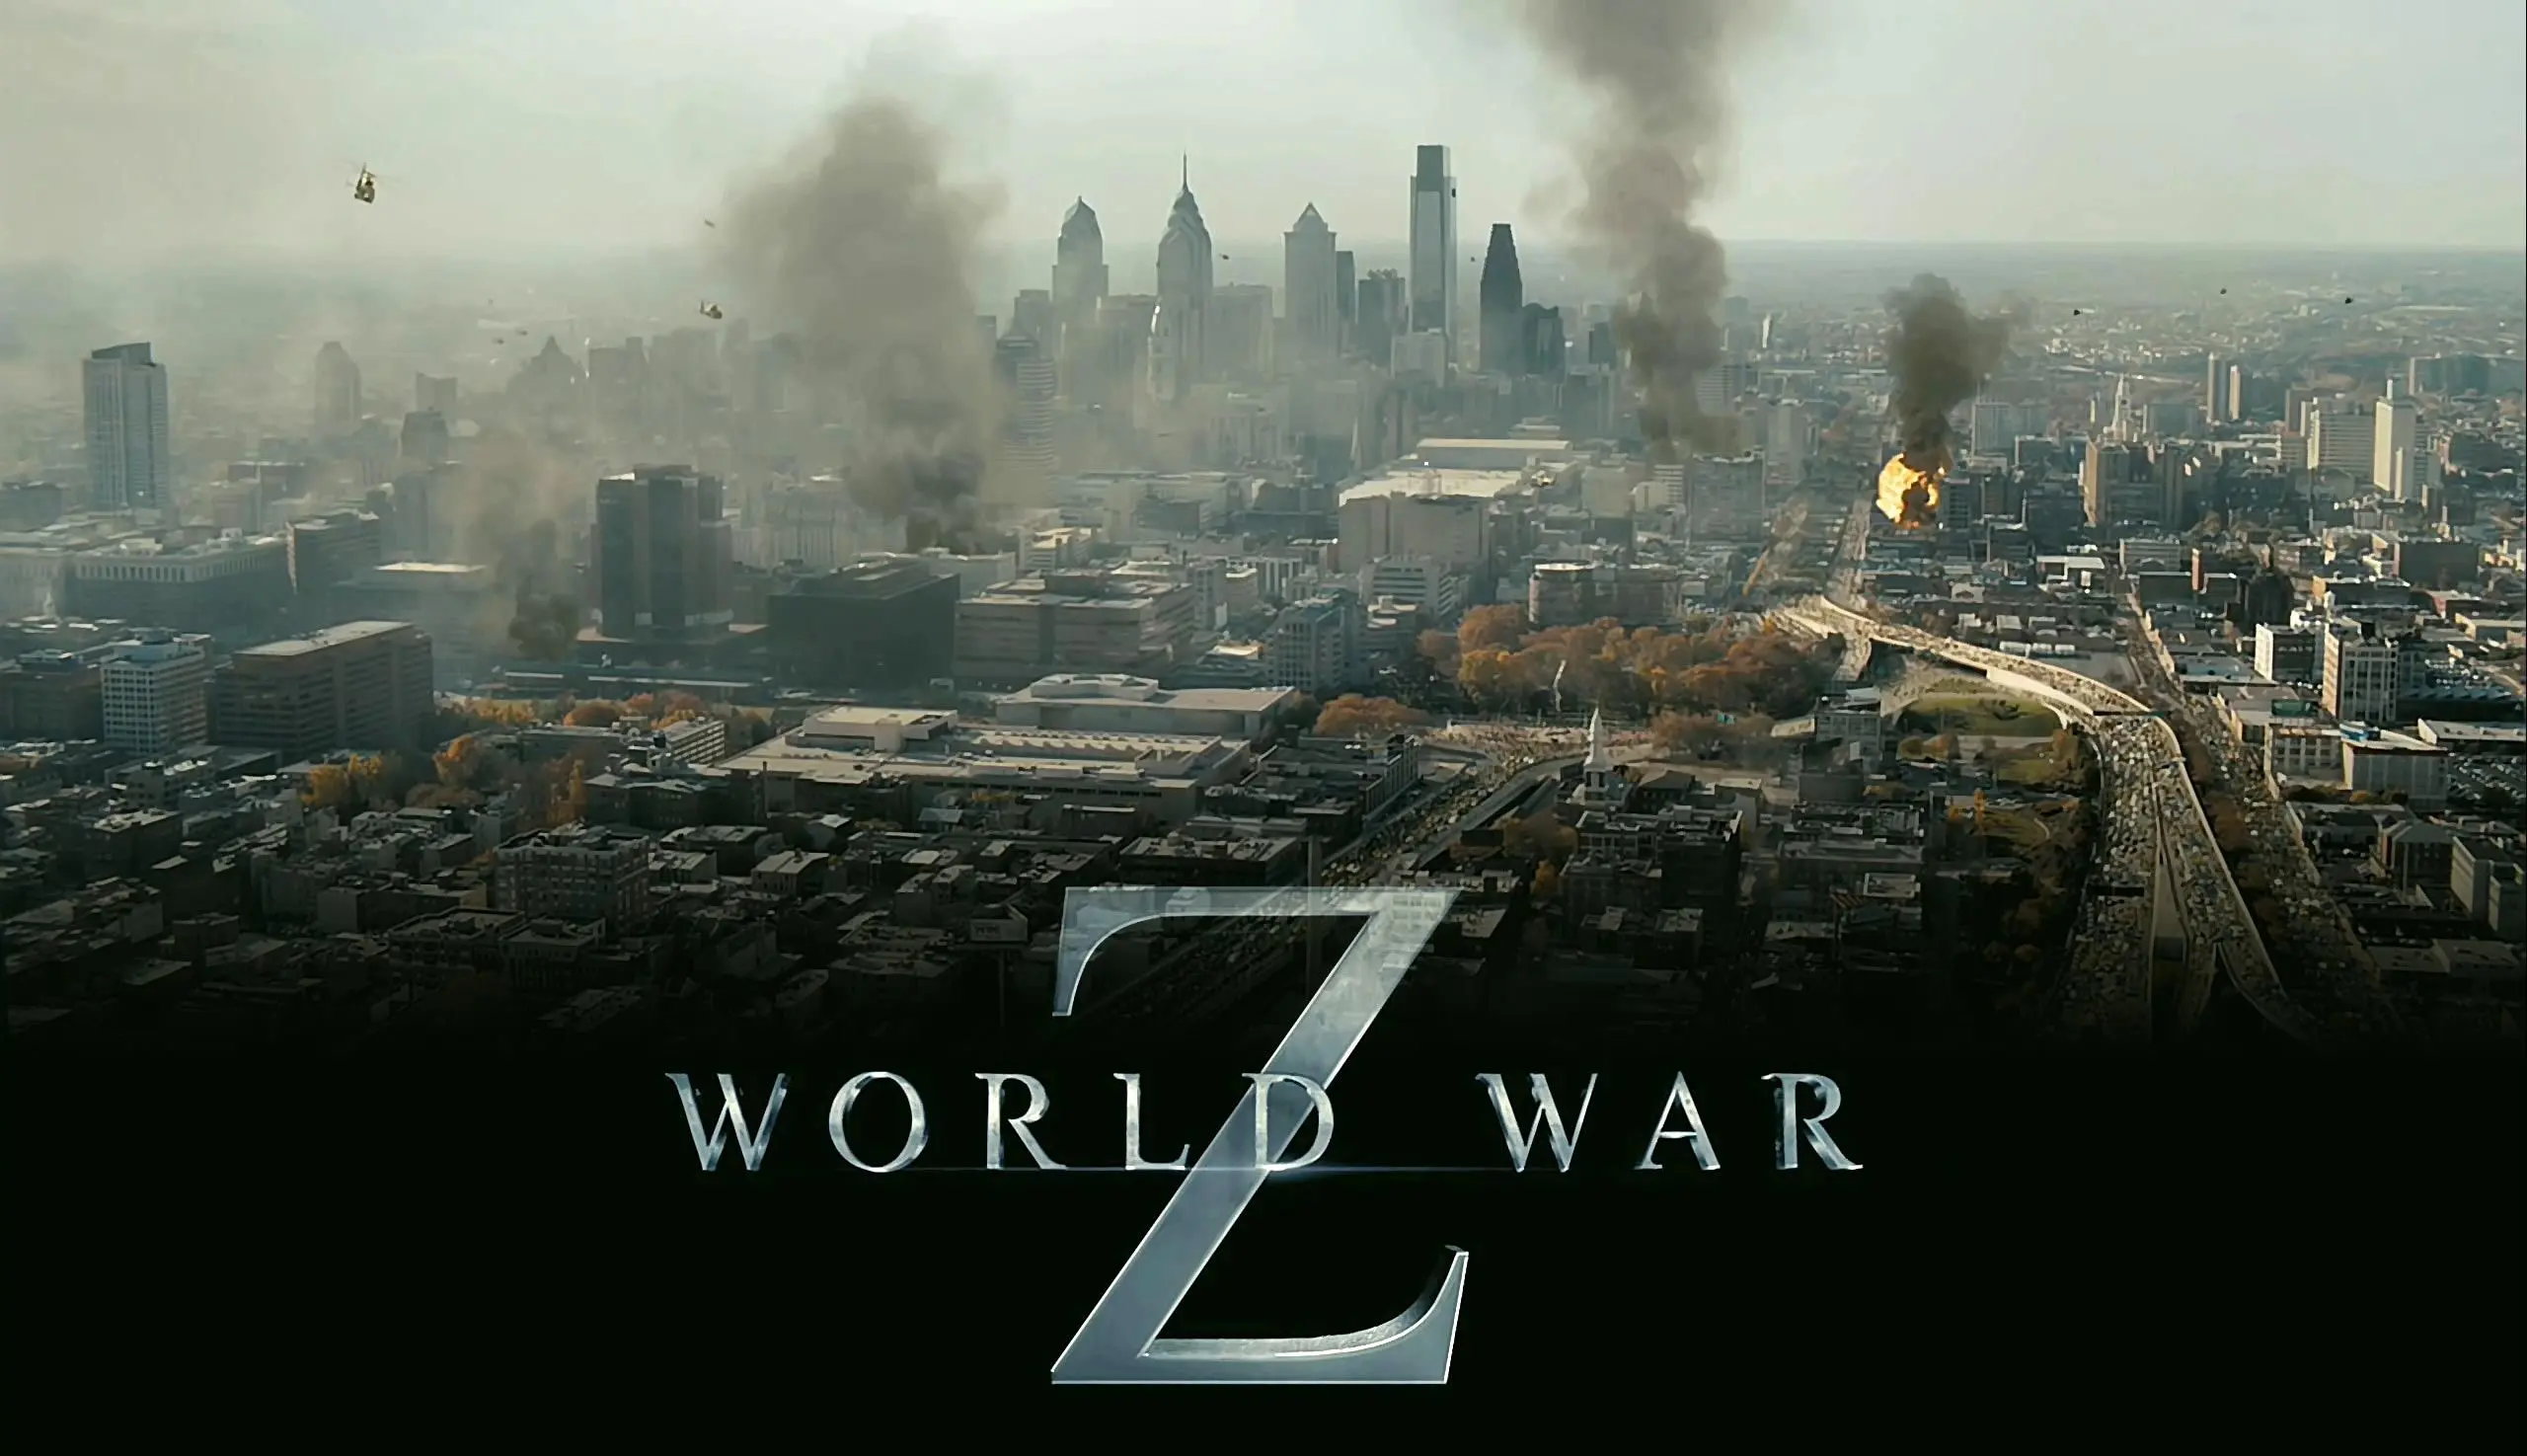 Zombies : La deuxième bande-annonce de World War Z